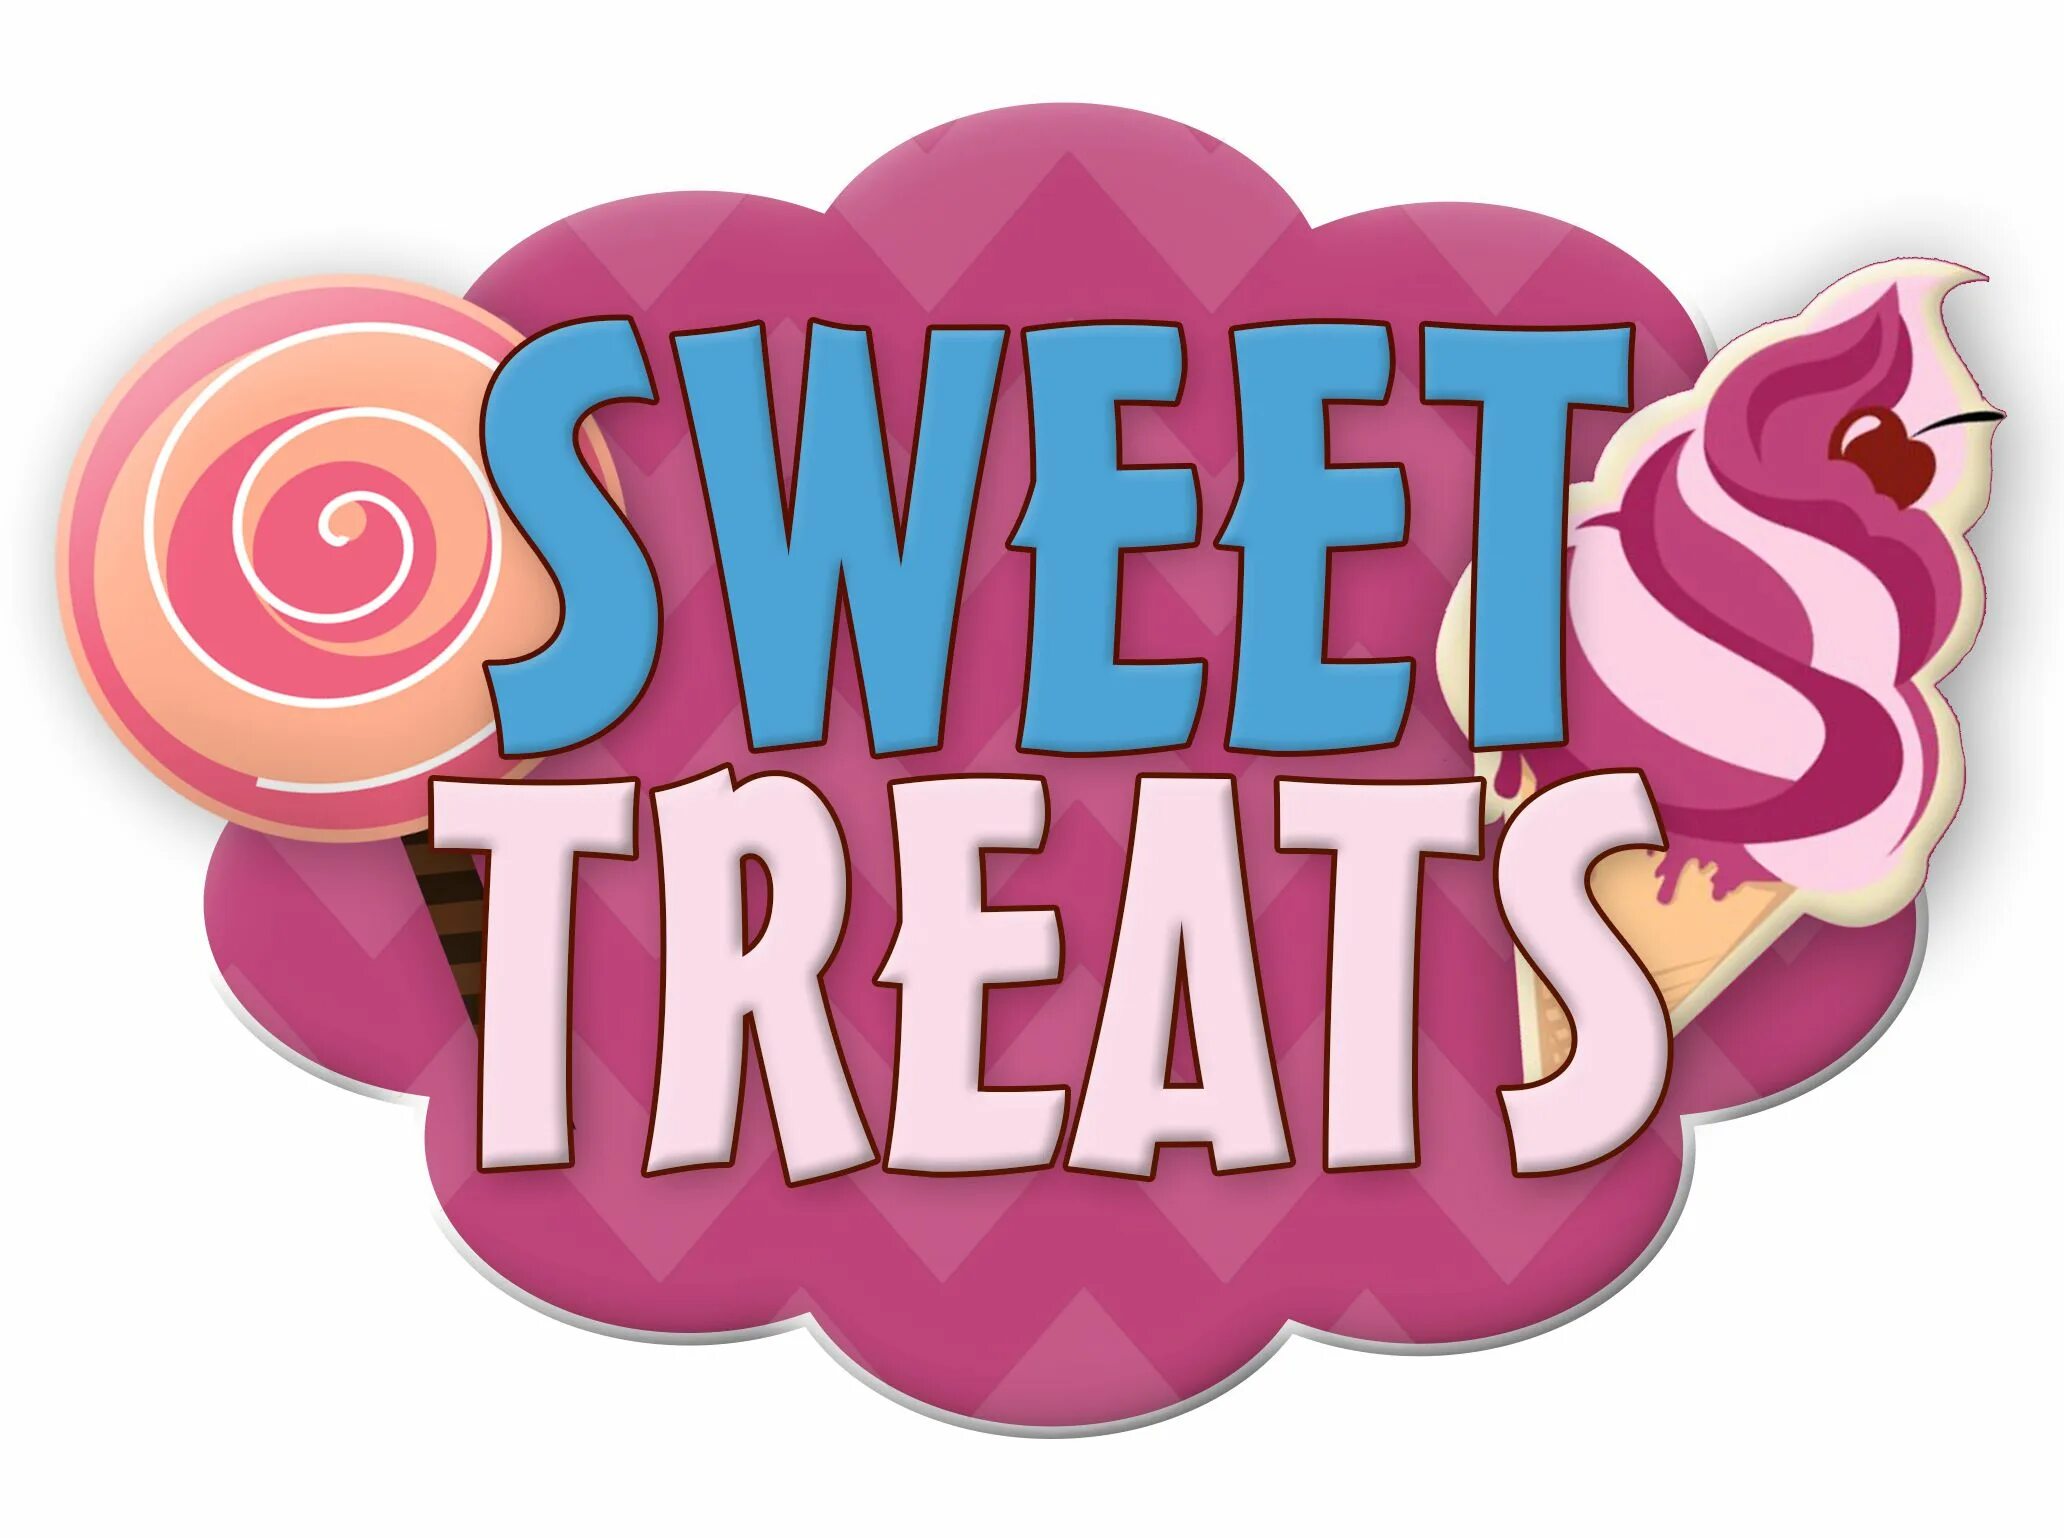 Sweet логотип. Sweet treats. Treats лого. Sweet надпись. Sweet treat